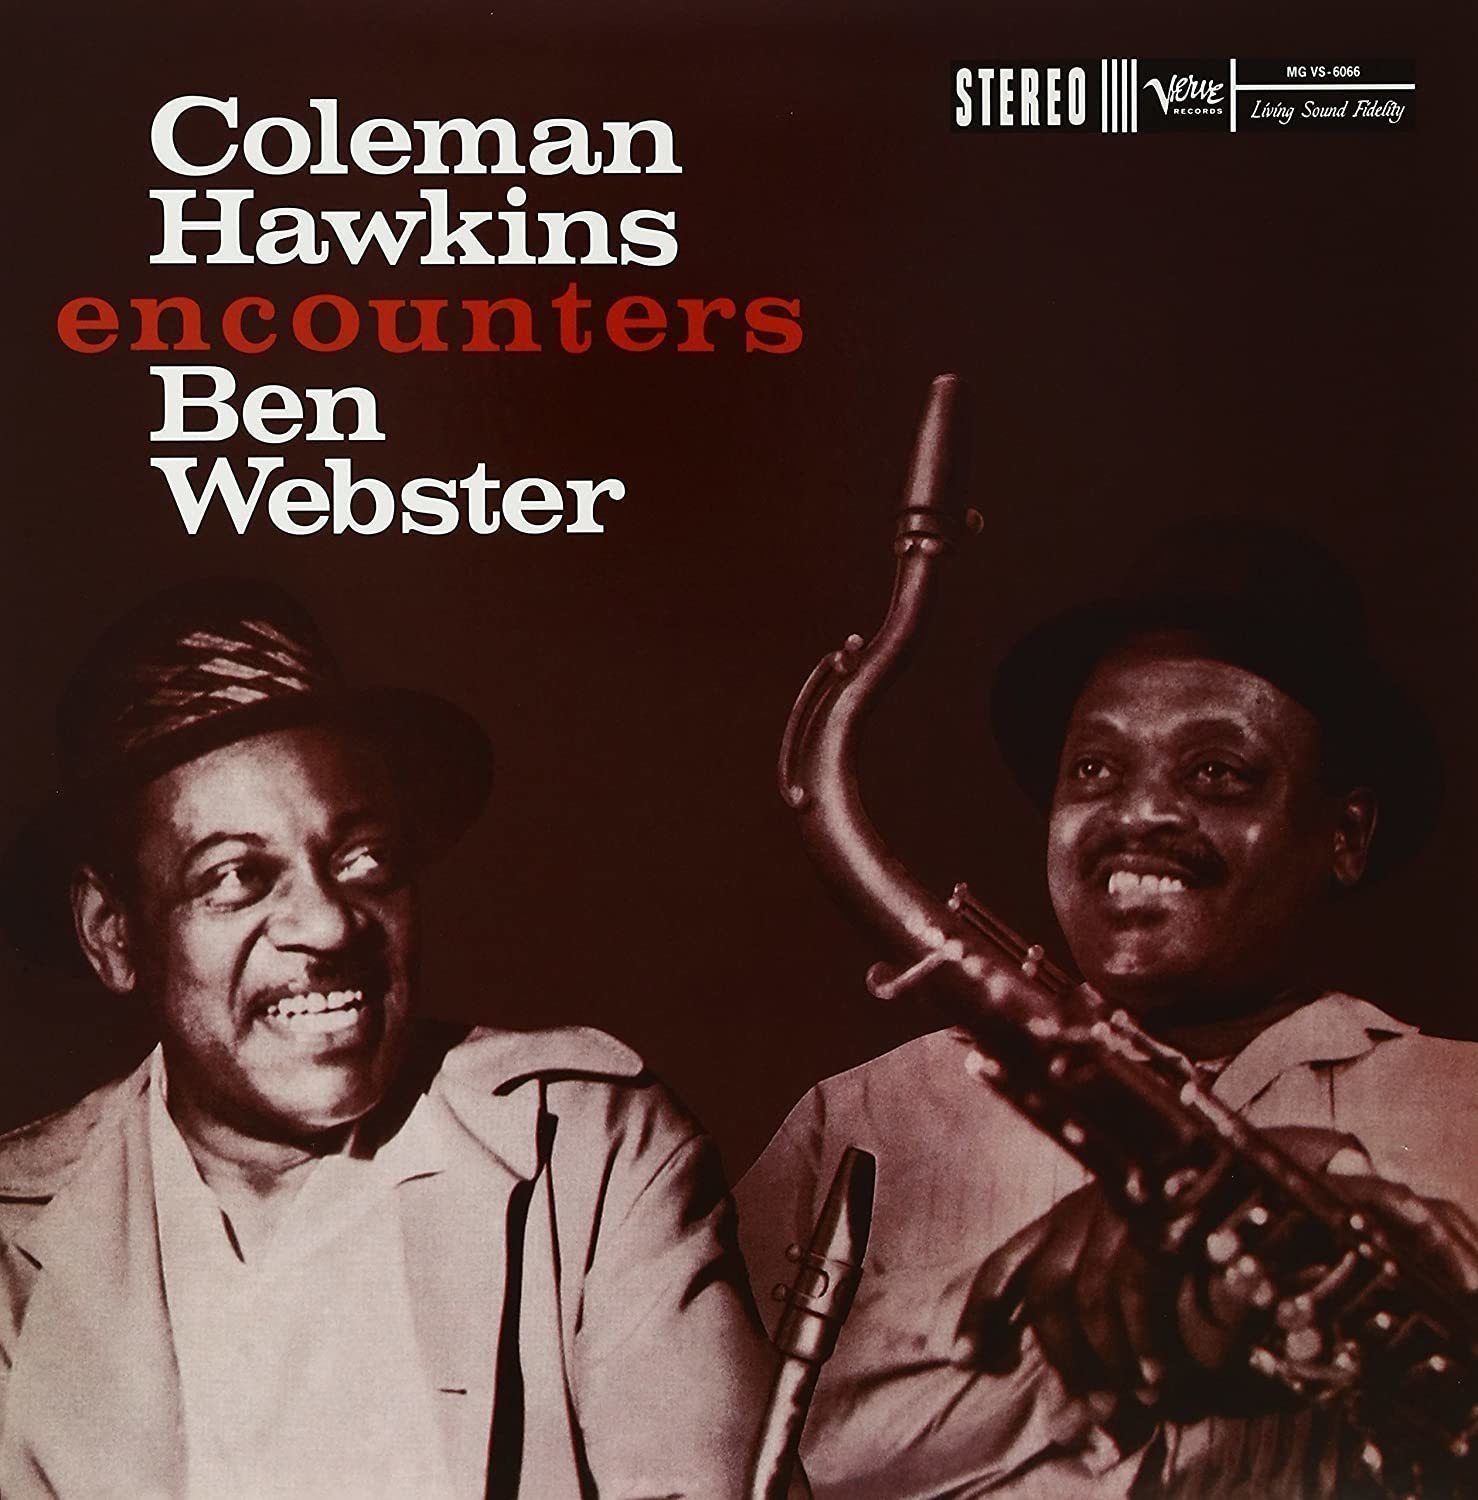 LP Coleman Hawkins - Encounters Ben Webster (Remastered) (2 x 12" Vinyl)